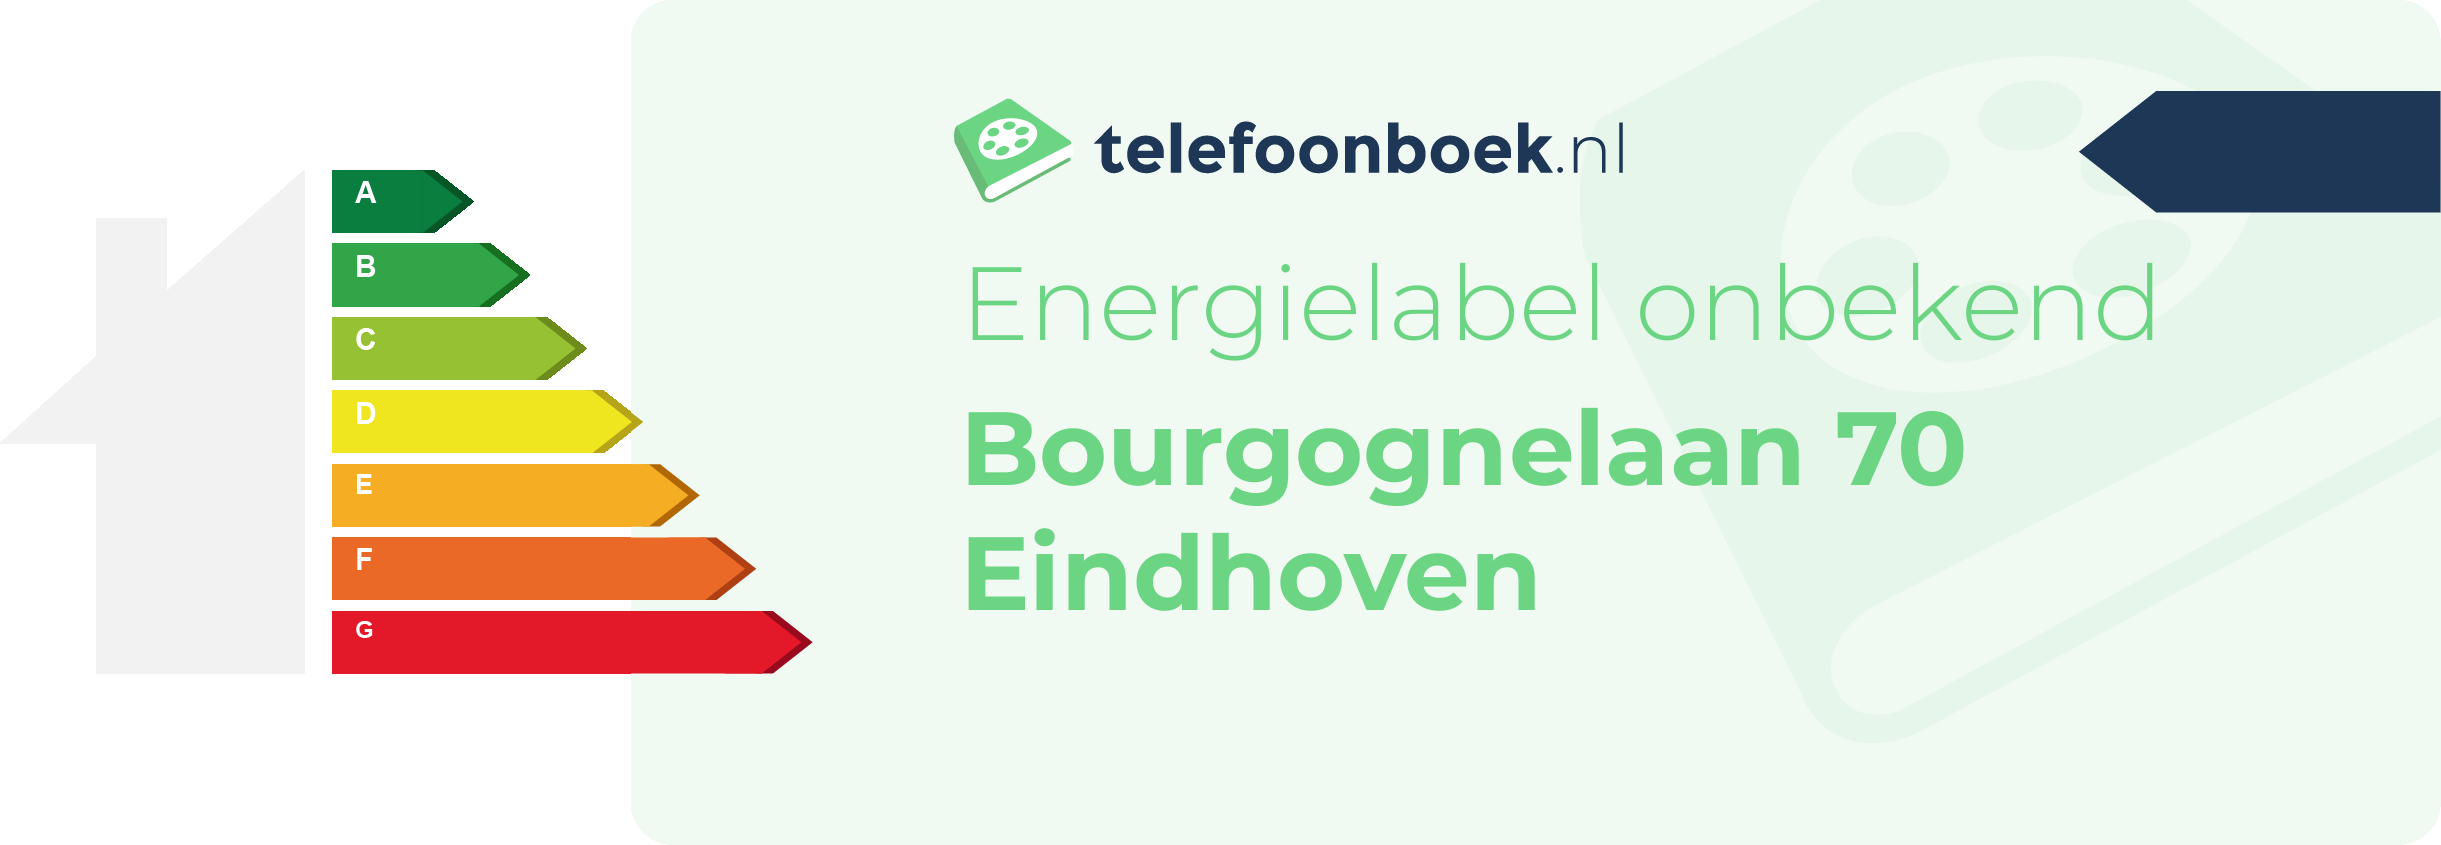 Energielabel Bourgognelaan 70 Eindhoven